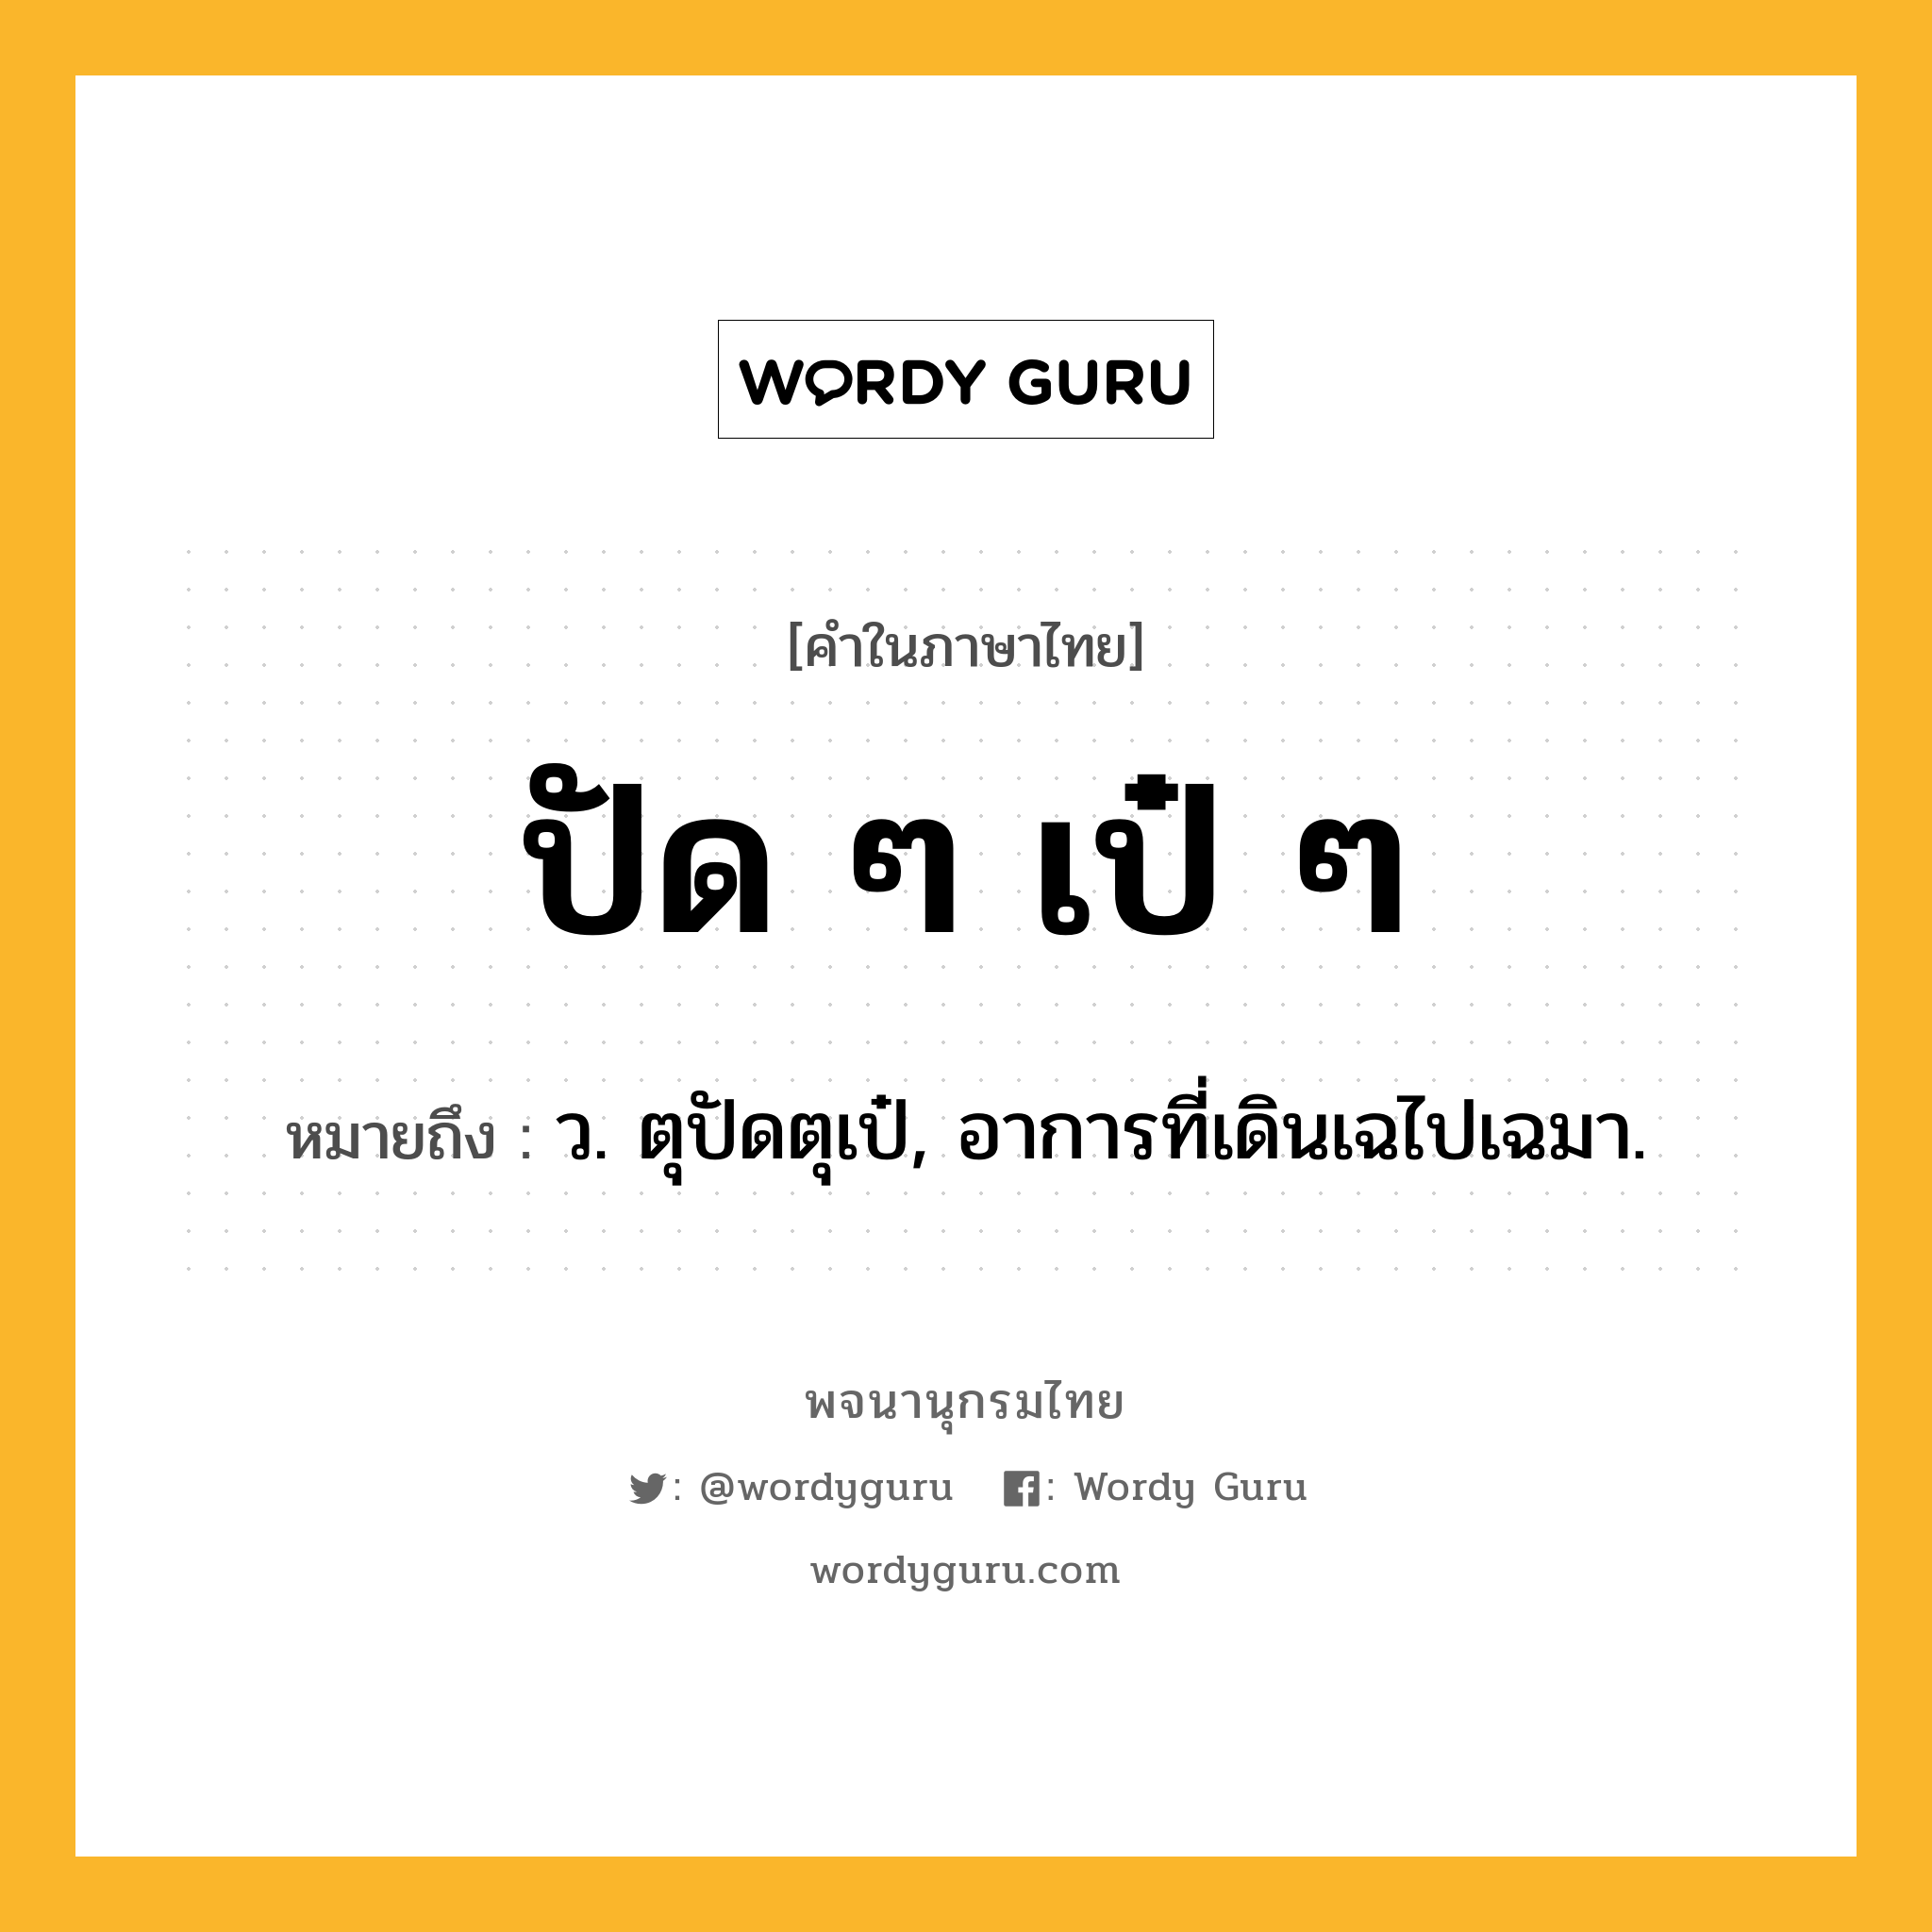 ปัด ๆ เป๋ ๆ ความหมาย หมายถึงอะไร?, คำในภาษาไทย ปัด ๆ เป๋ ๆ หมายถึง ว. ตุปัดตุเป๋, อาการที่เดินเฉไปเฉมา.